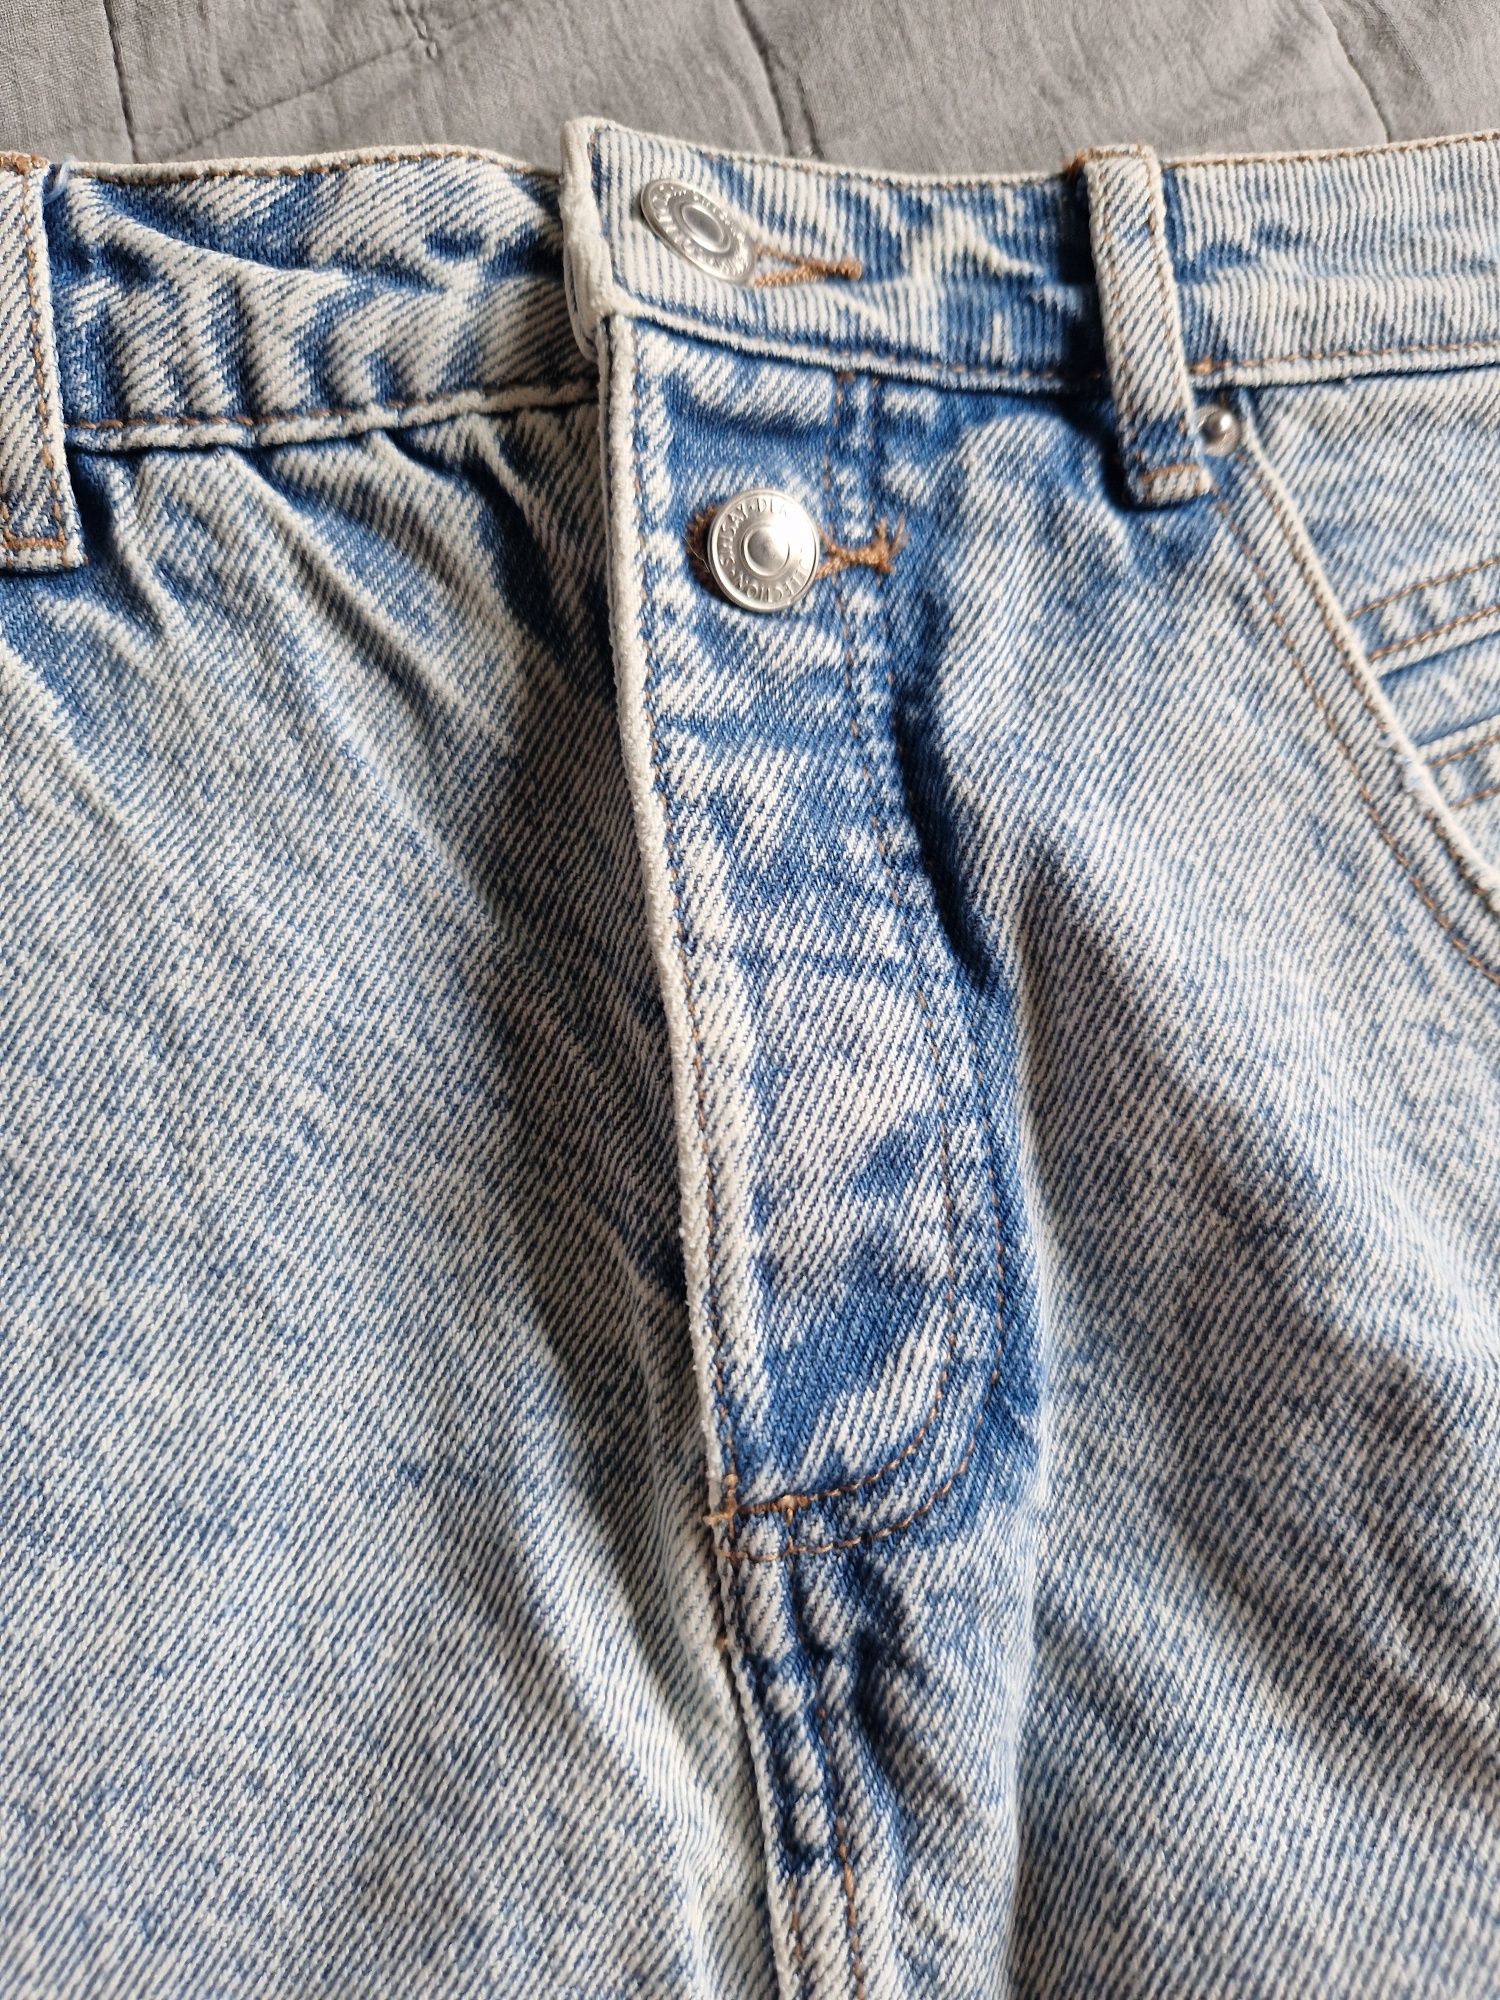 Spódnica jeansowa rozmiar L 40 mini